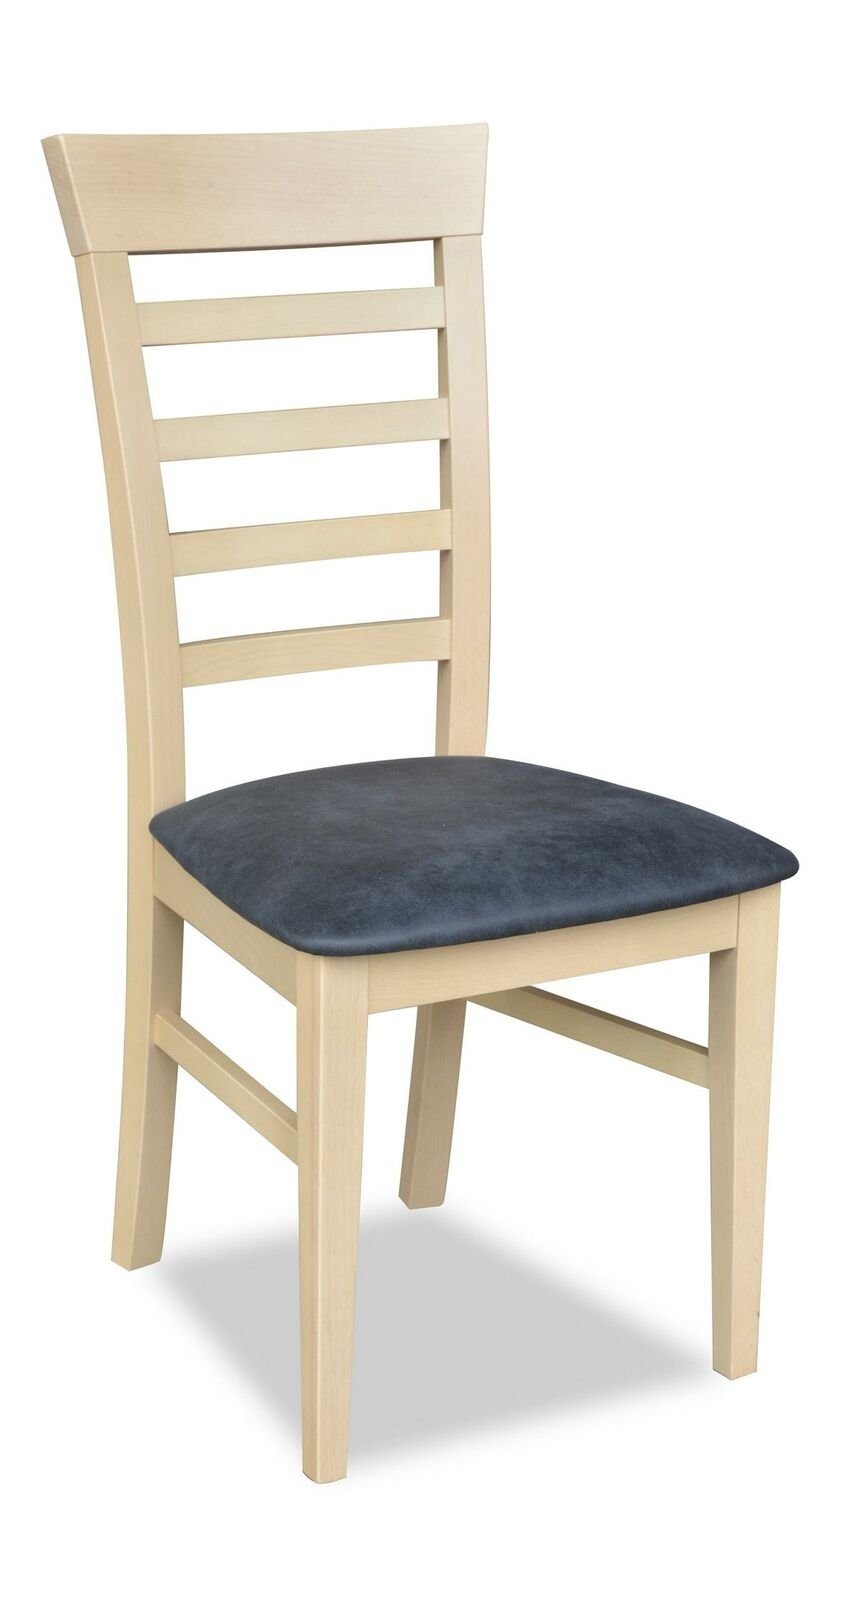 Stühle Stuhl Set Essgarnitur Essgruppe Möbel Lehn Garnitur Esszimmer 6x JVmoebel Stuhl, Gruppe